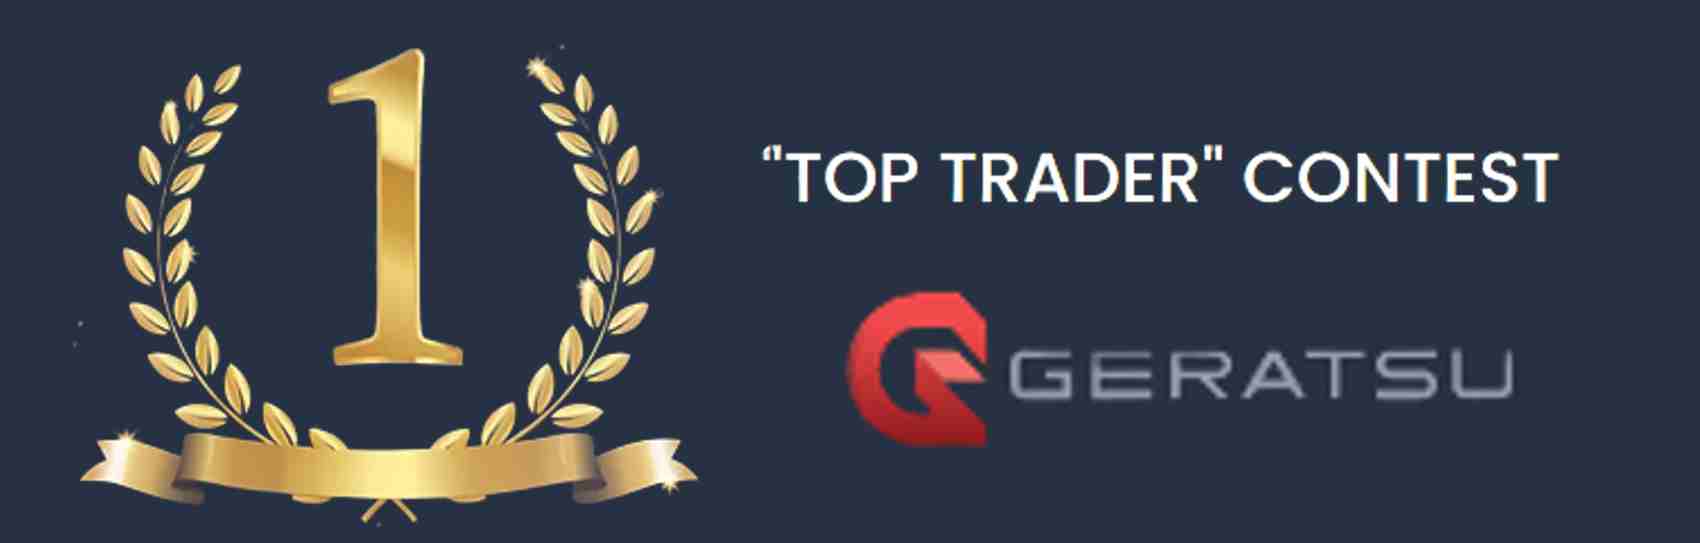 Top Trader Contest – Geratsu